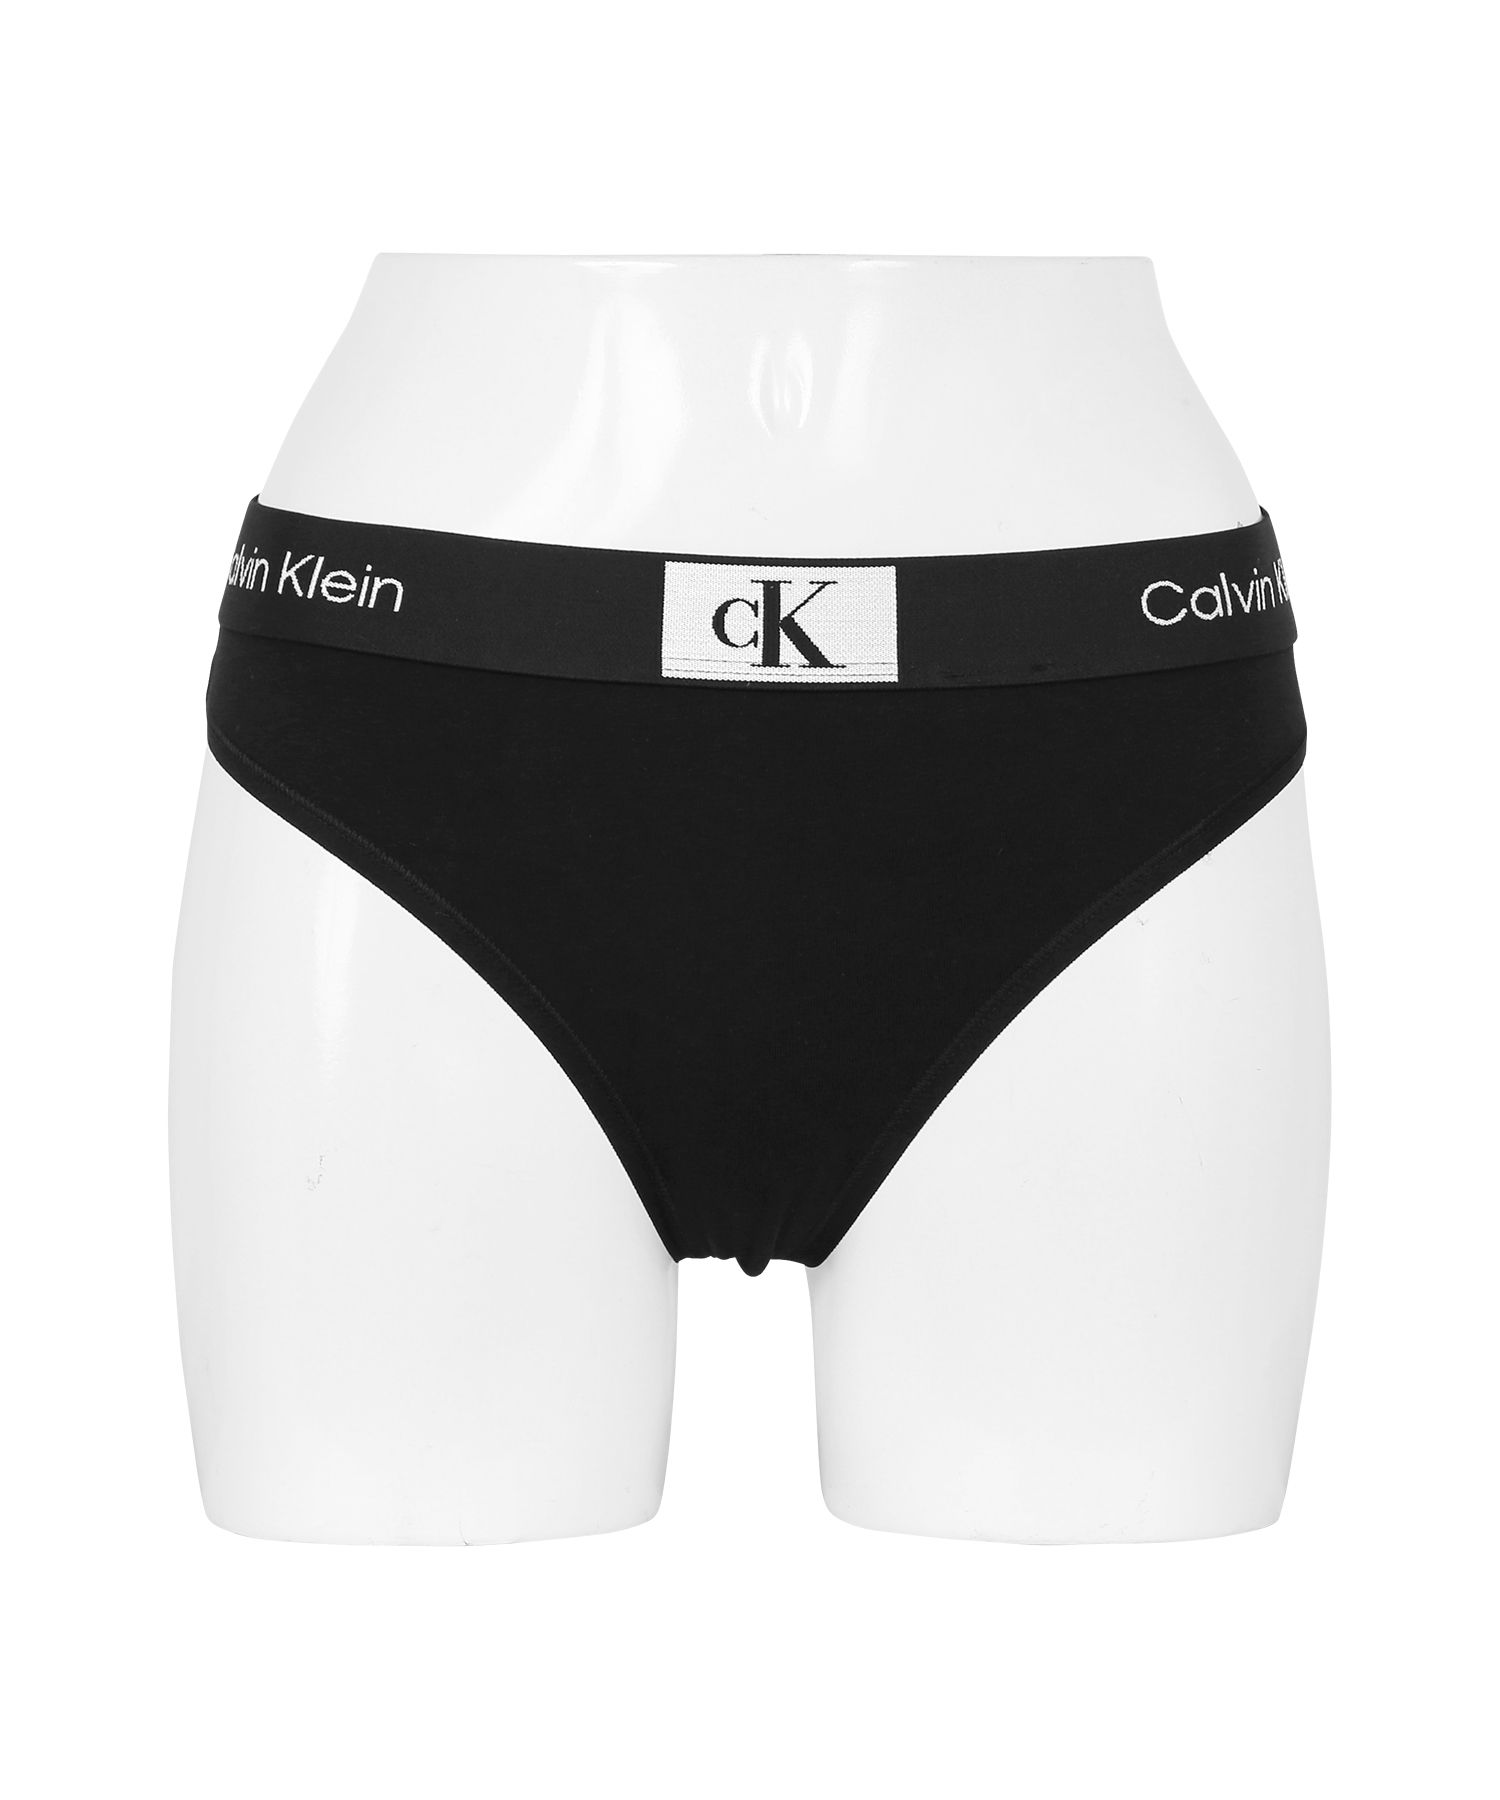 カルバンクライン Tバック レディース Calvin Klein アンダーウェア 女性 下着 CK メール便